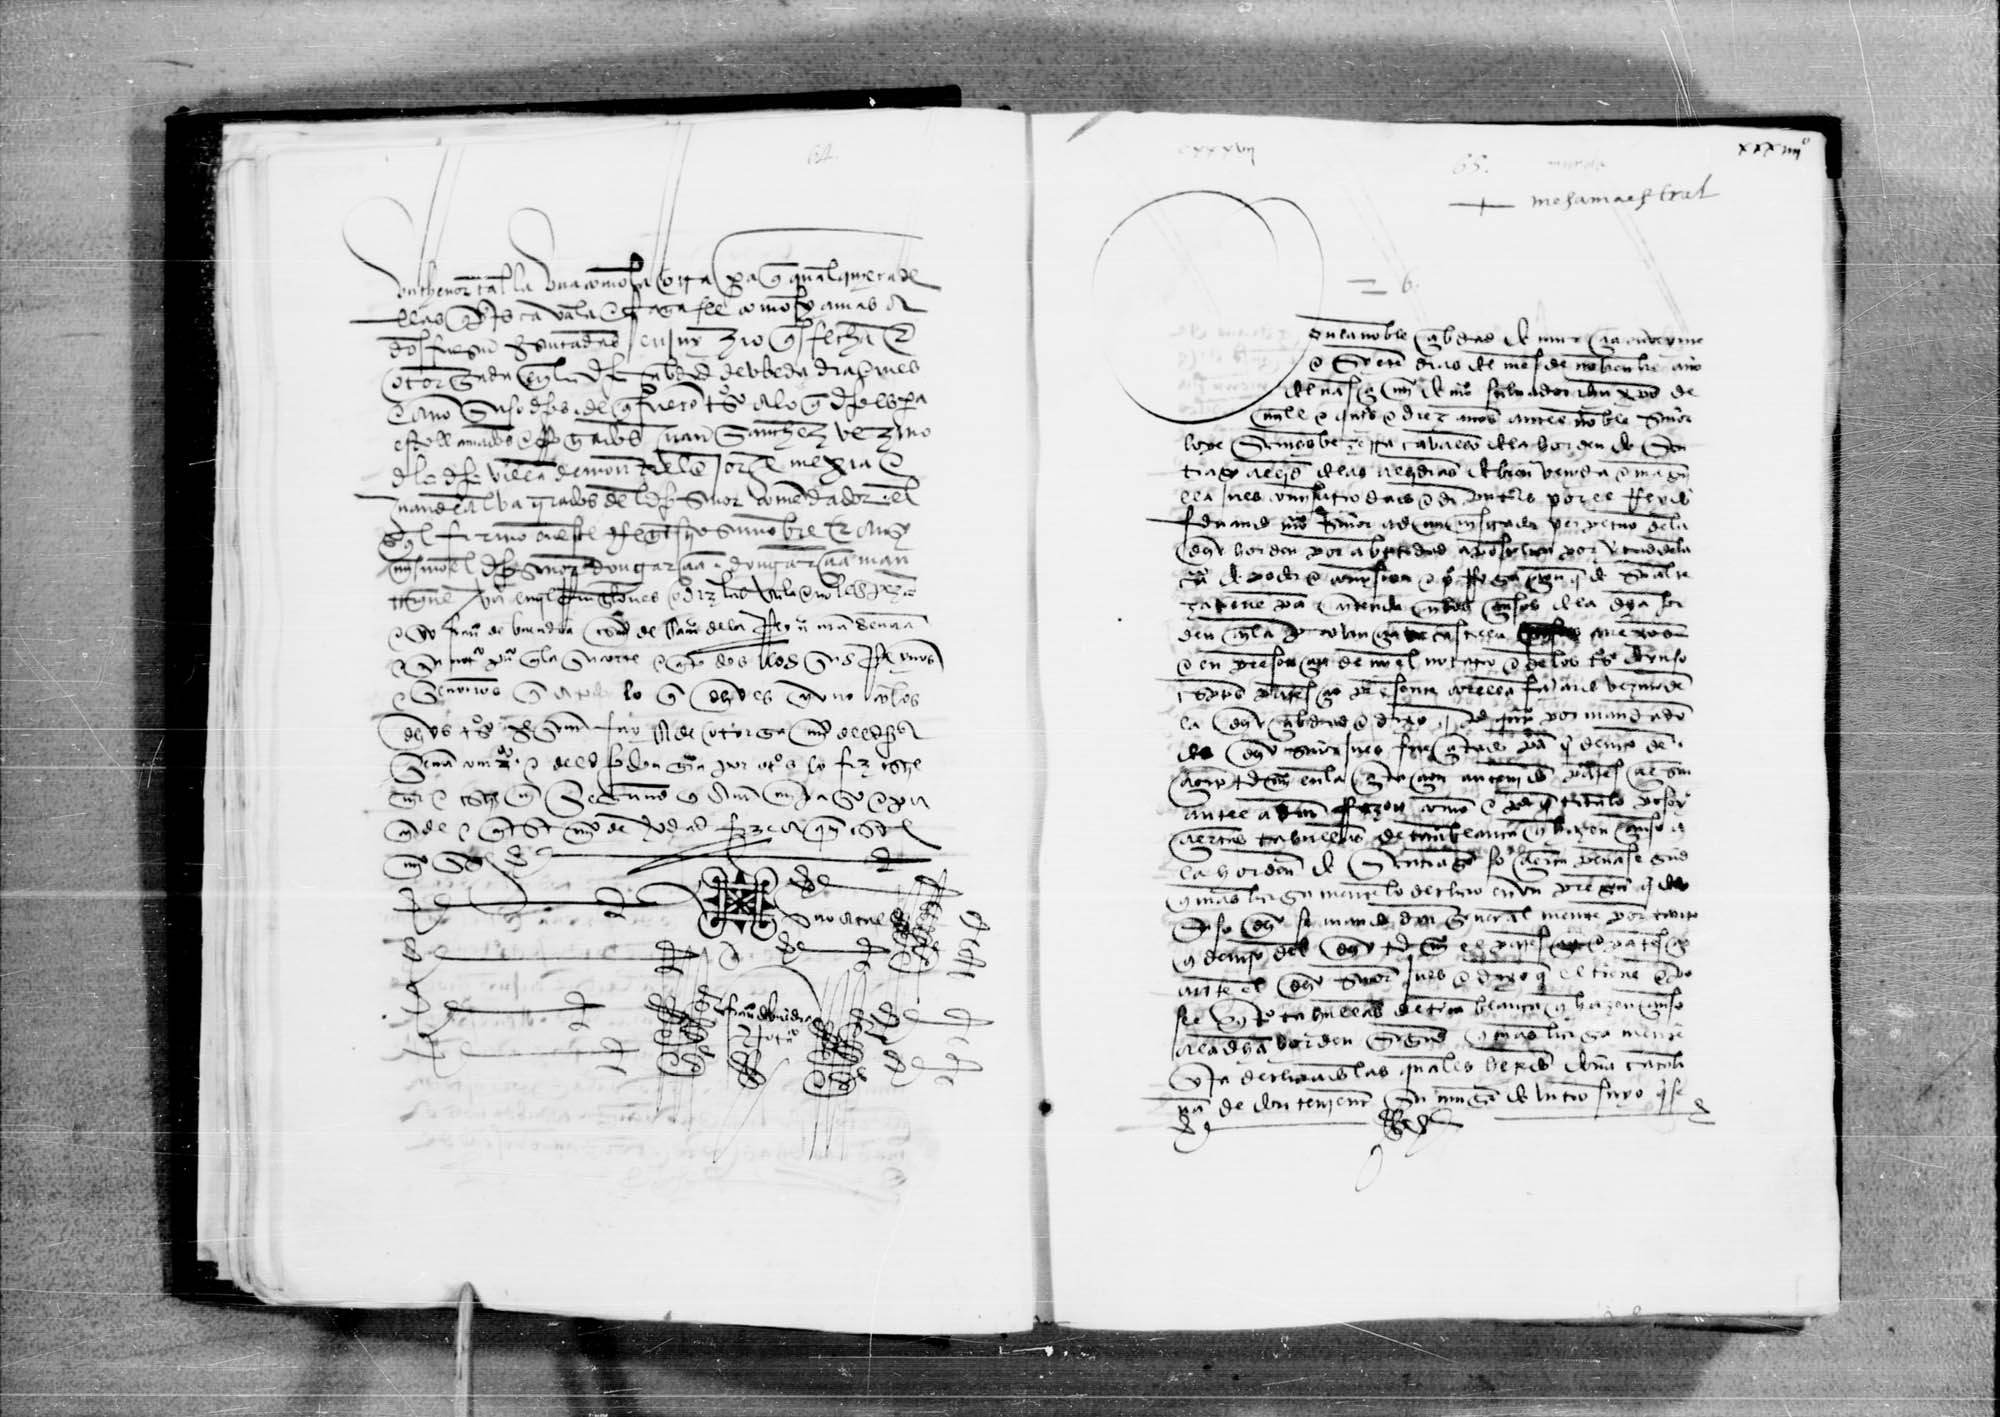 Libro de los censos que pertenecen a la Orden de Santiago en Murcia.